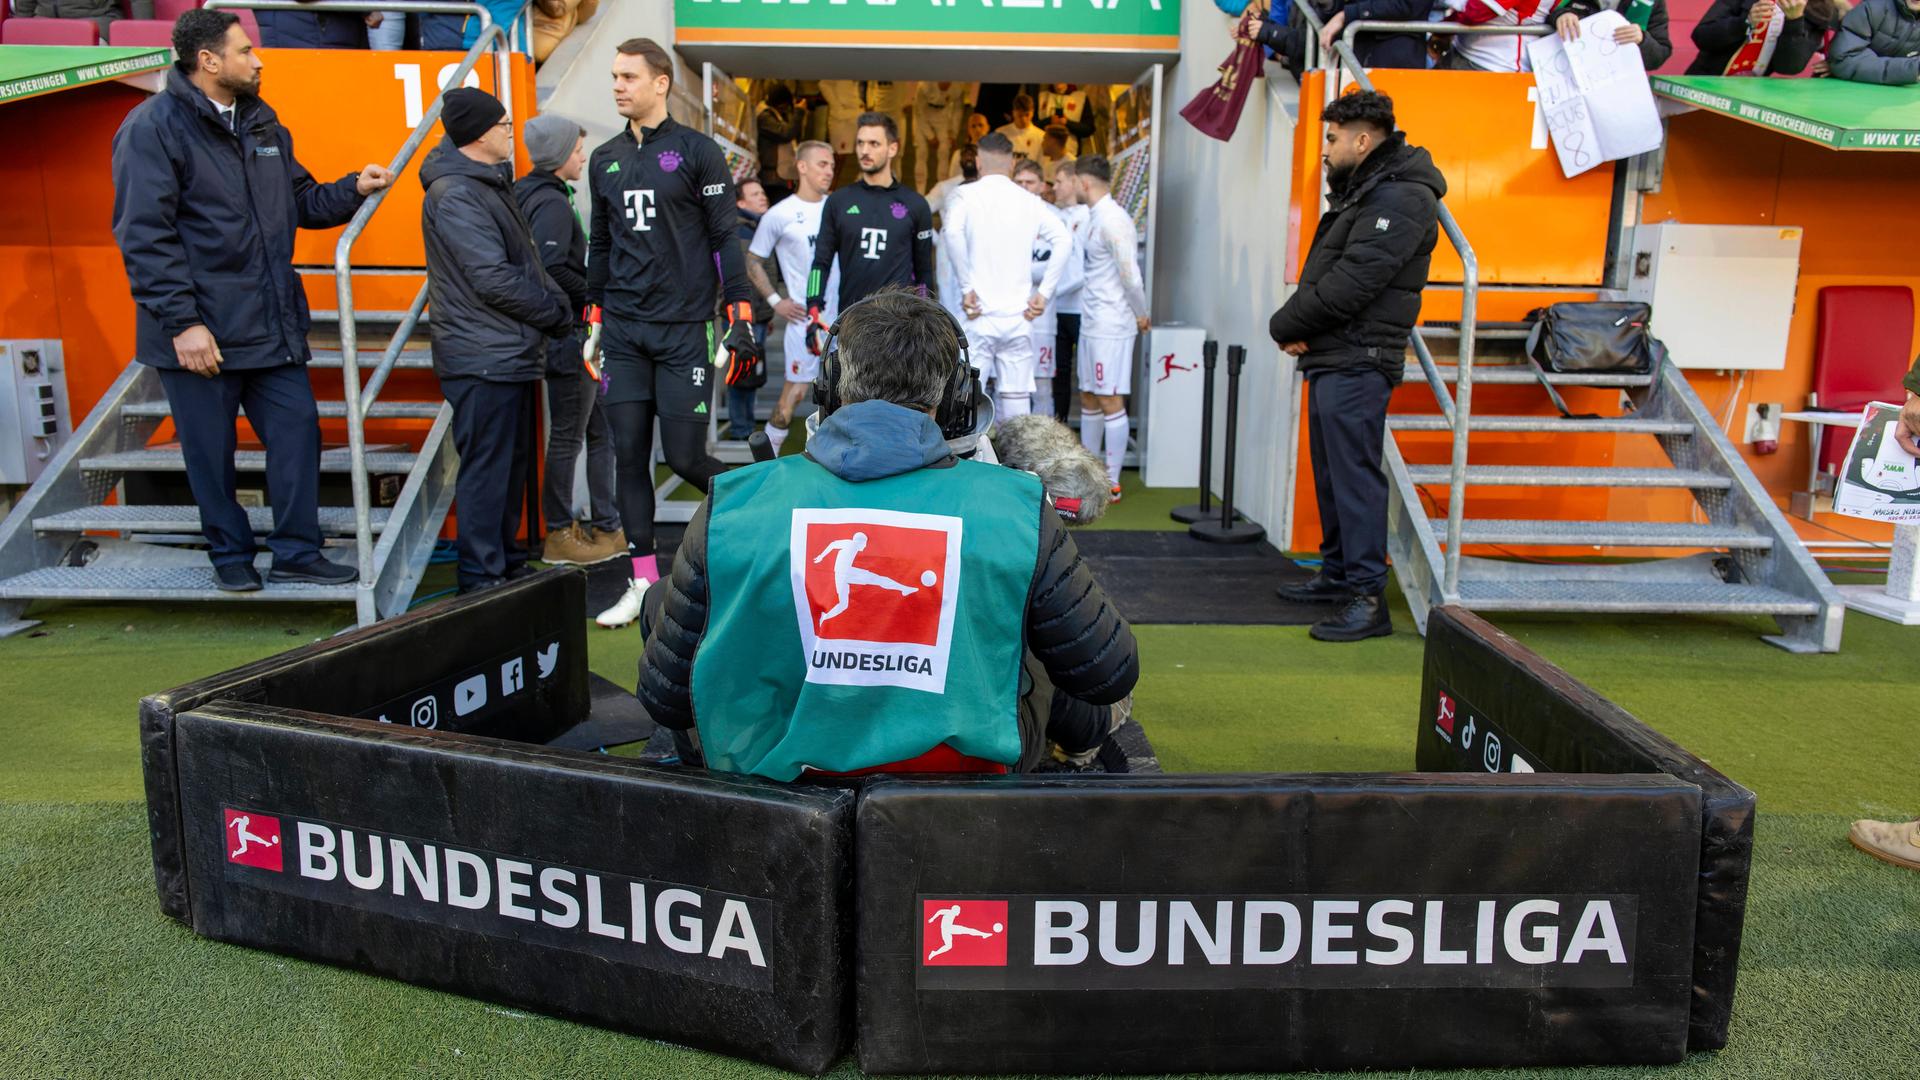 Ein Kameramann verfolgt die Spieler beim Einlauf auf den Rasen aus den Katakomben beim Fußball-Bundesliga-Spiel FC Augsburg - FC Bayern München.